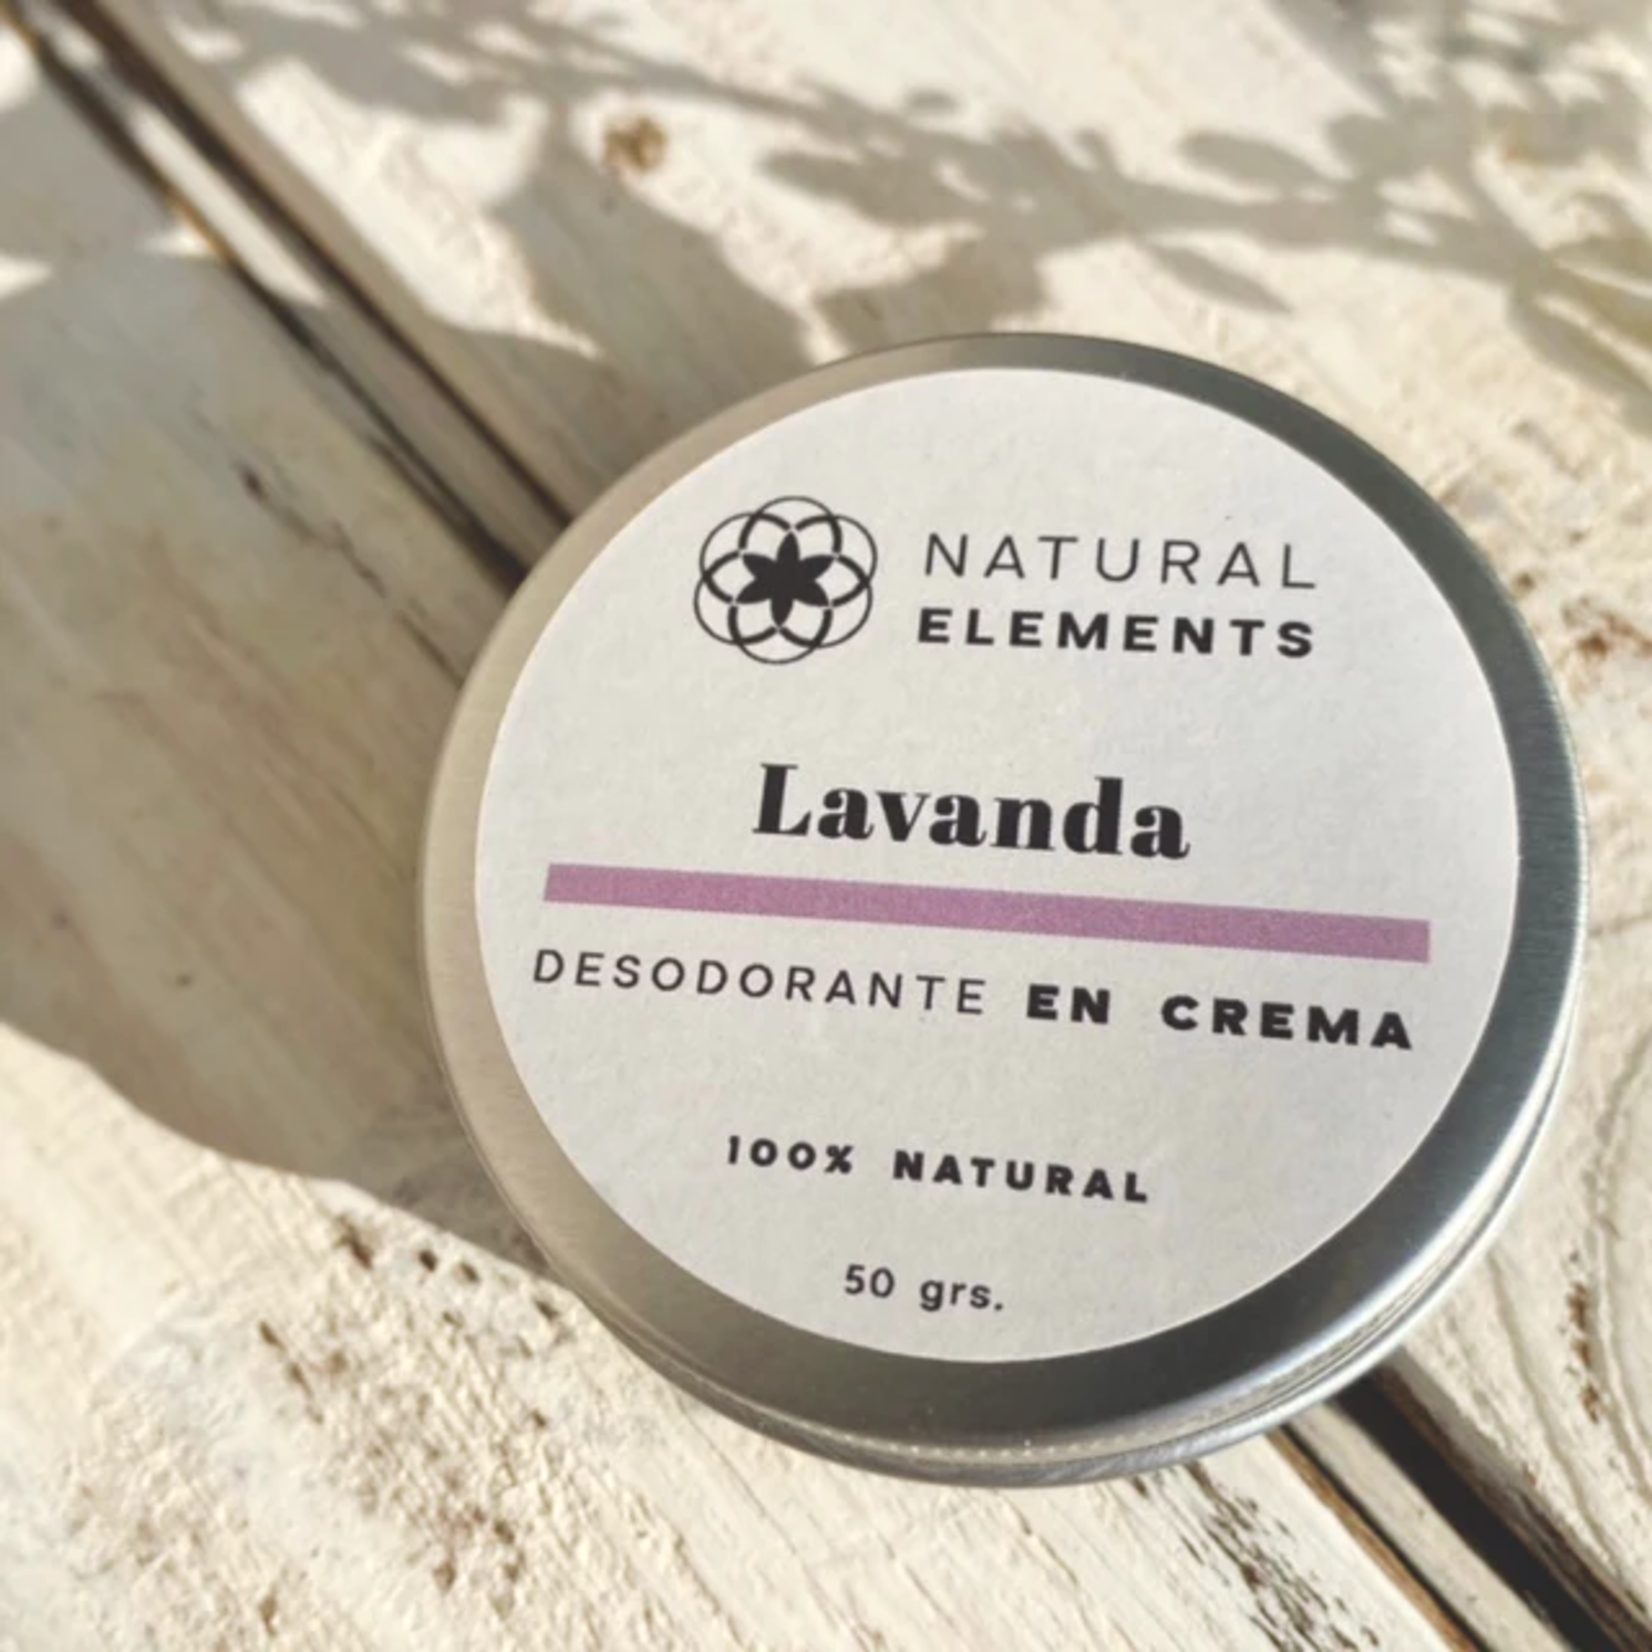 Natural elements Desodorante crema Natural Elements Lavanda 50 gr